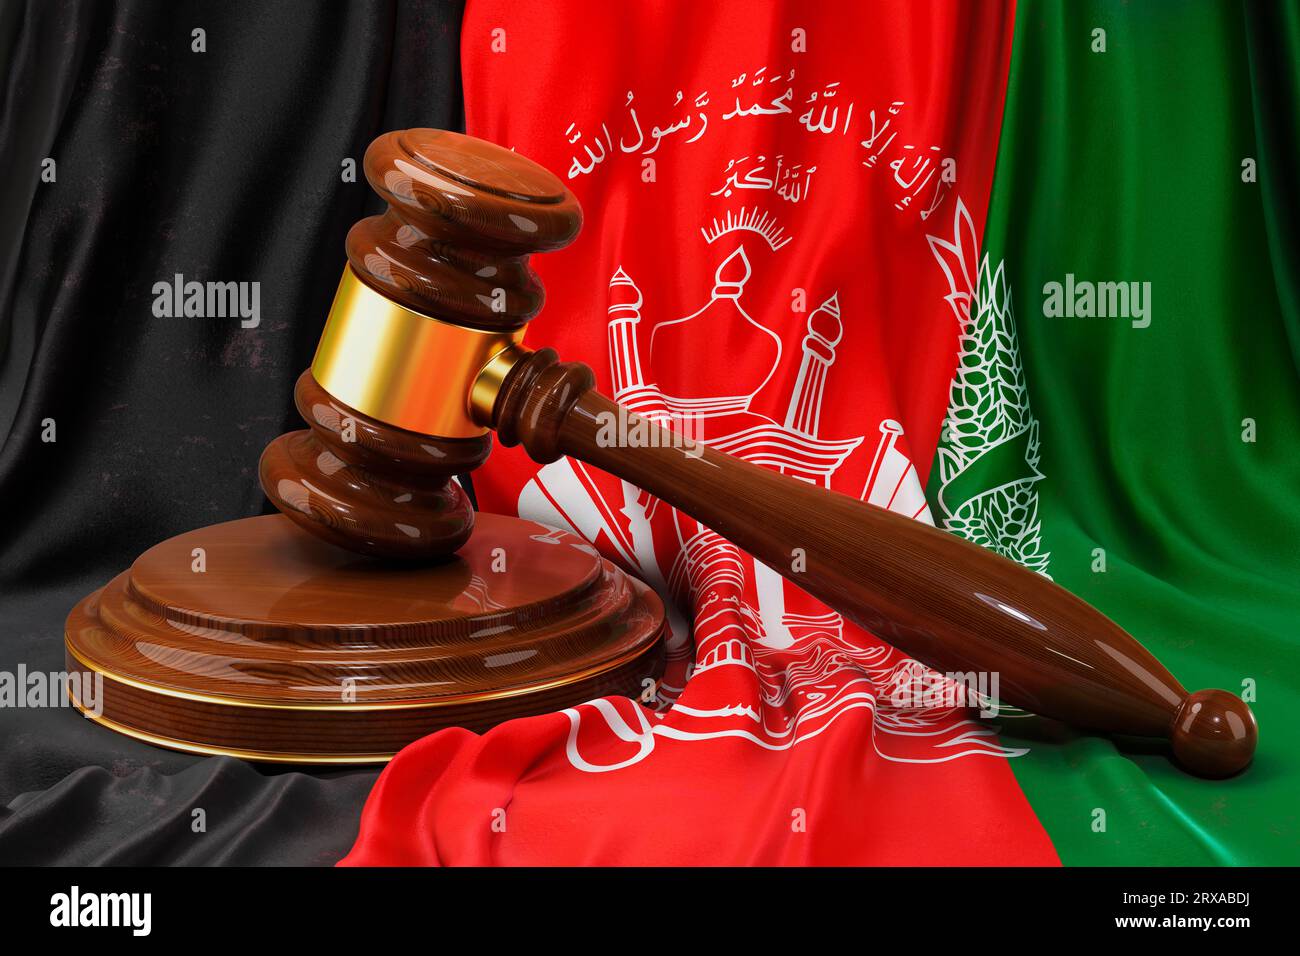 Afghanisches Recht- und Justizkonzept. Holzgabel auf der Flagge Afghanistans, 3D-Rendering Stockfoto